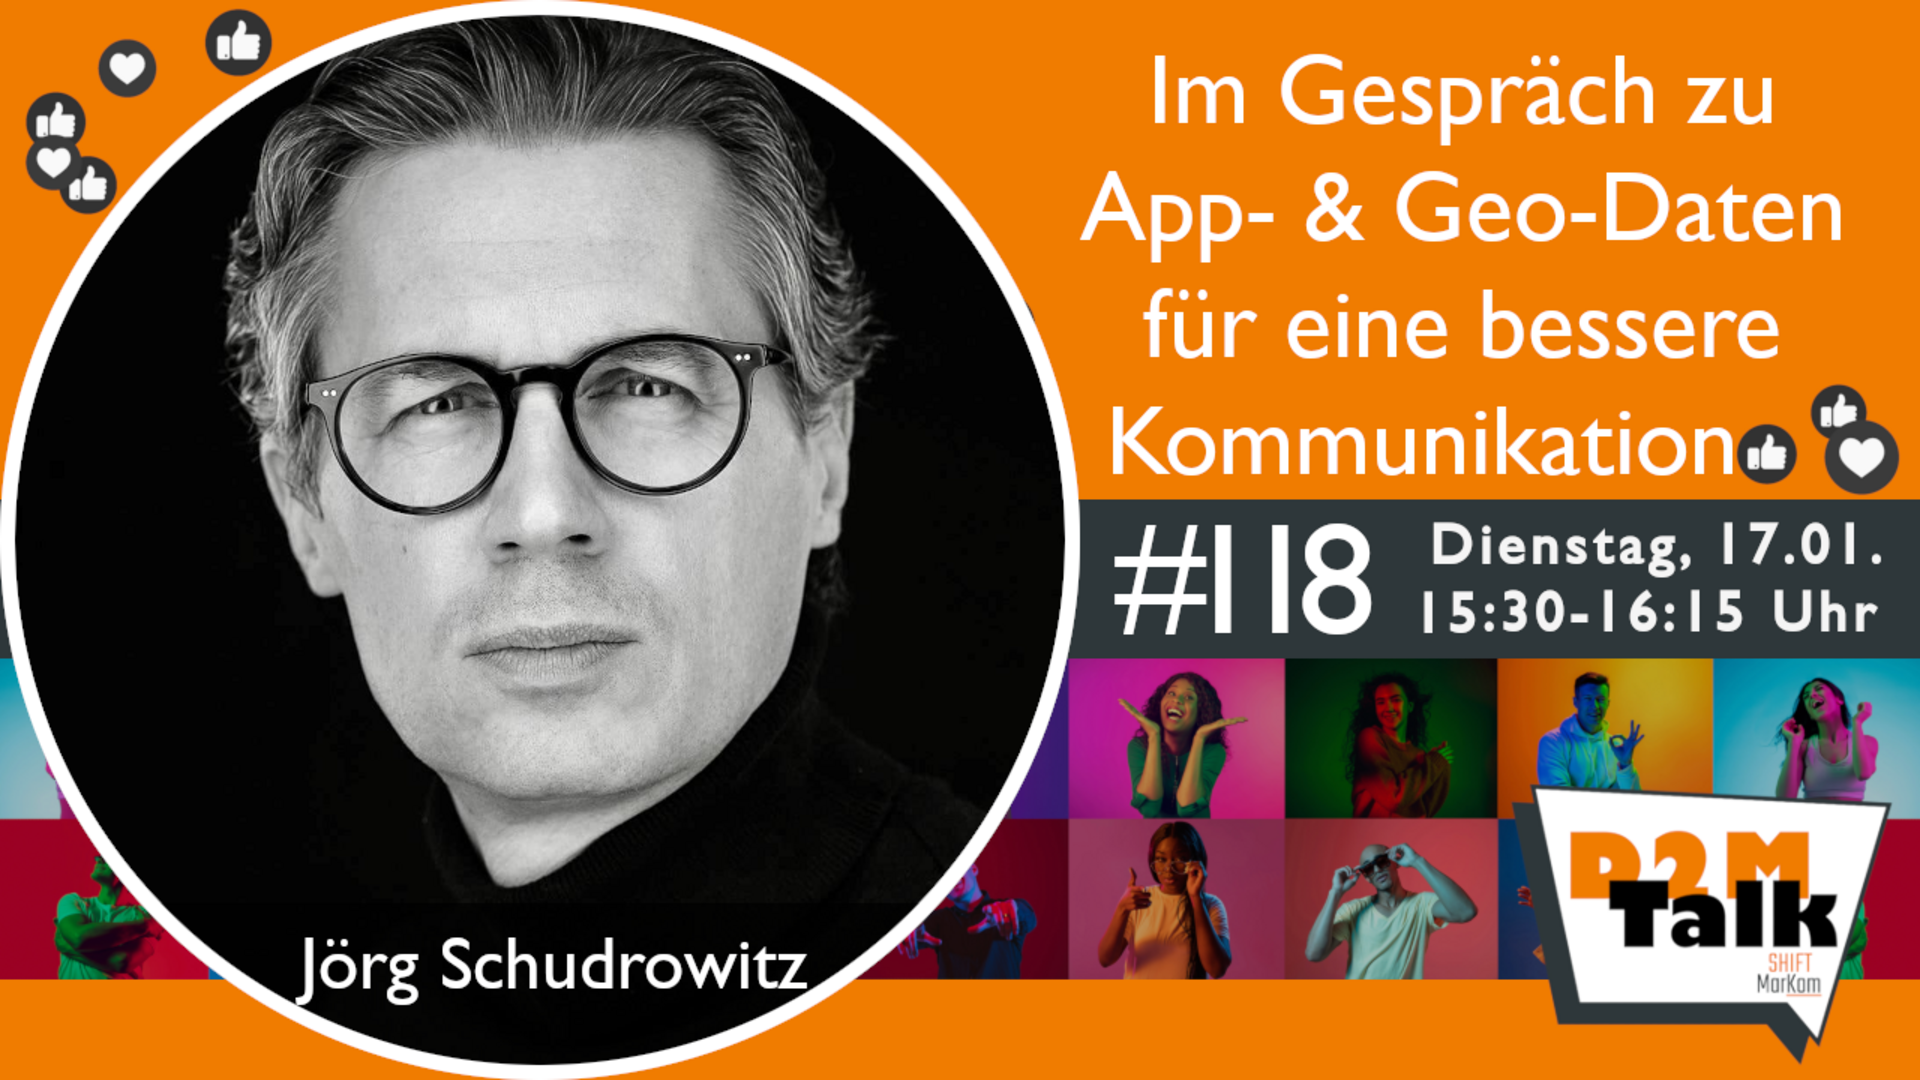 Im Gespräch mit Jörg Schudrowitz zu den Potentialen von App- & Geo-Daten für eine bessere Kundenansprache